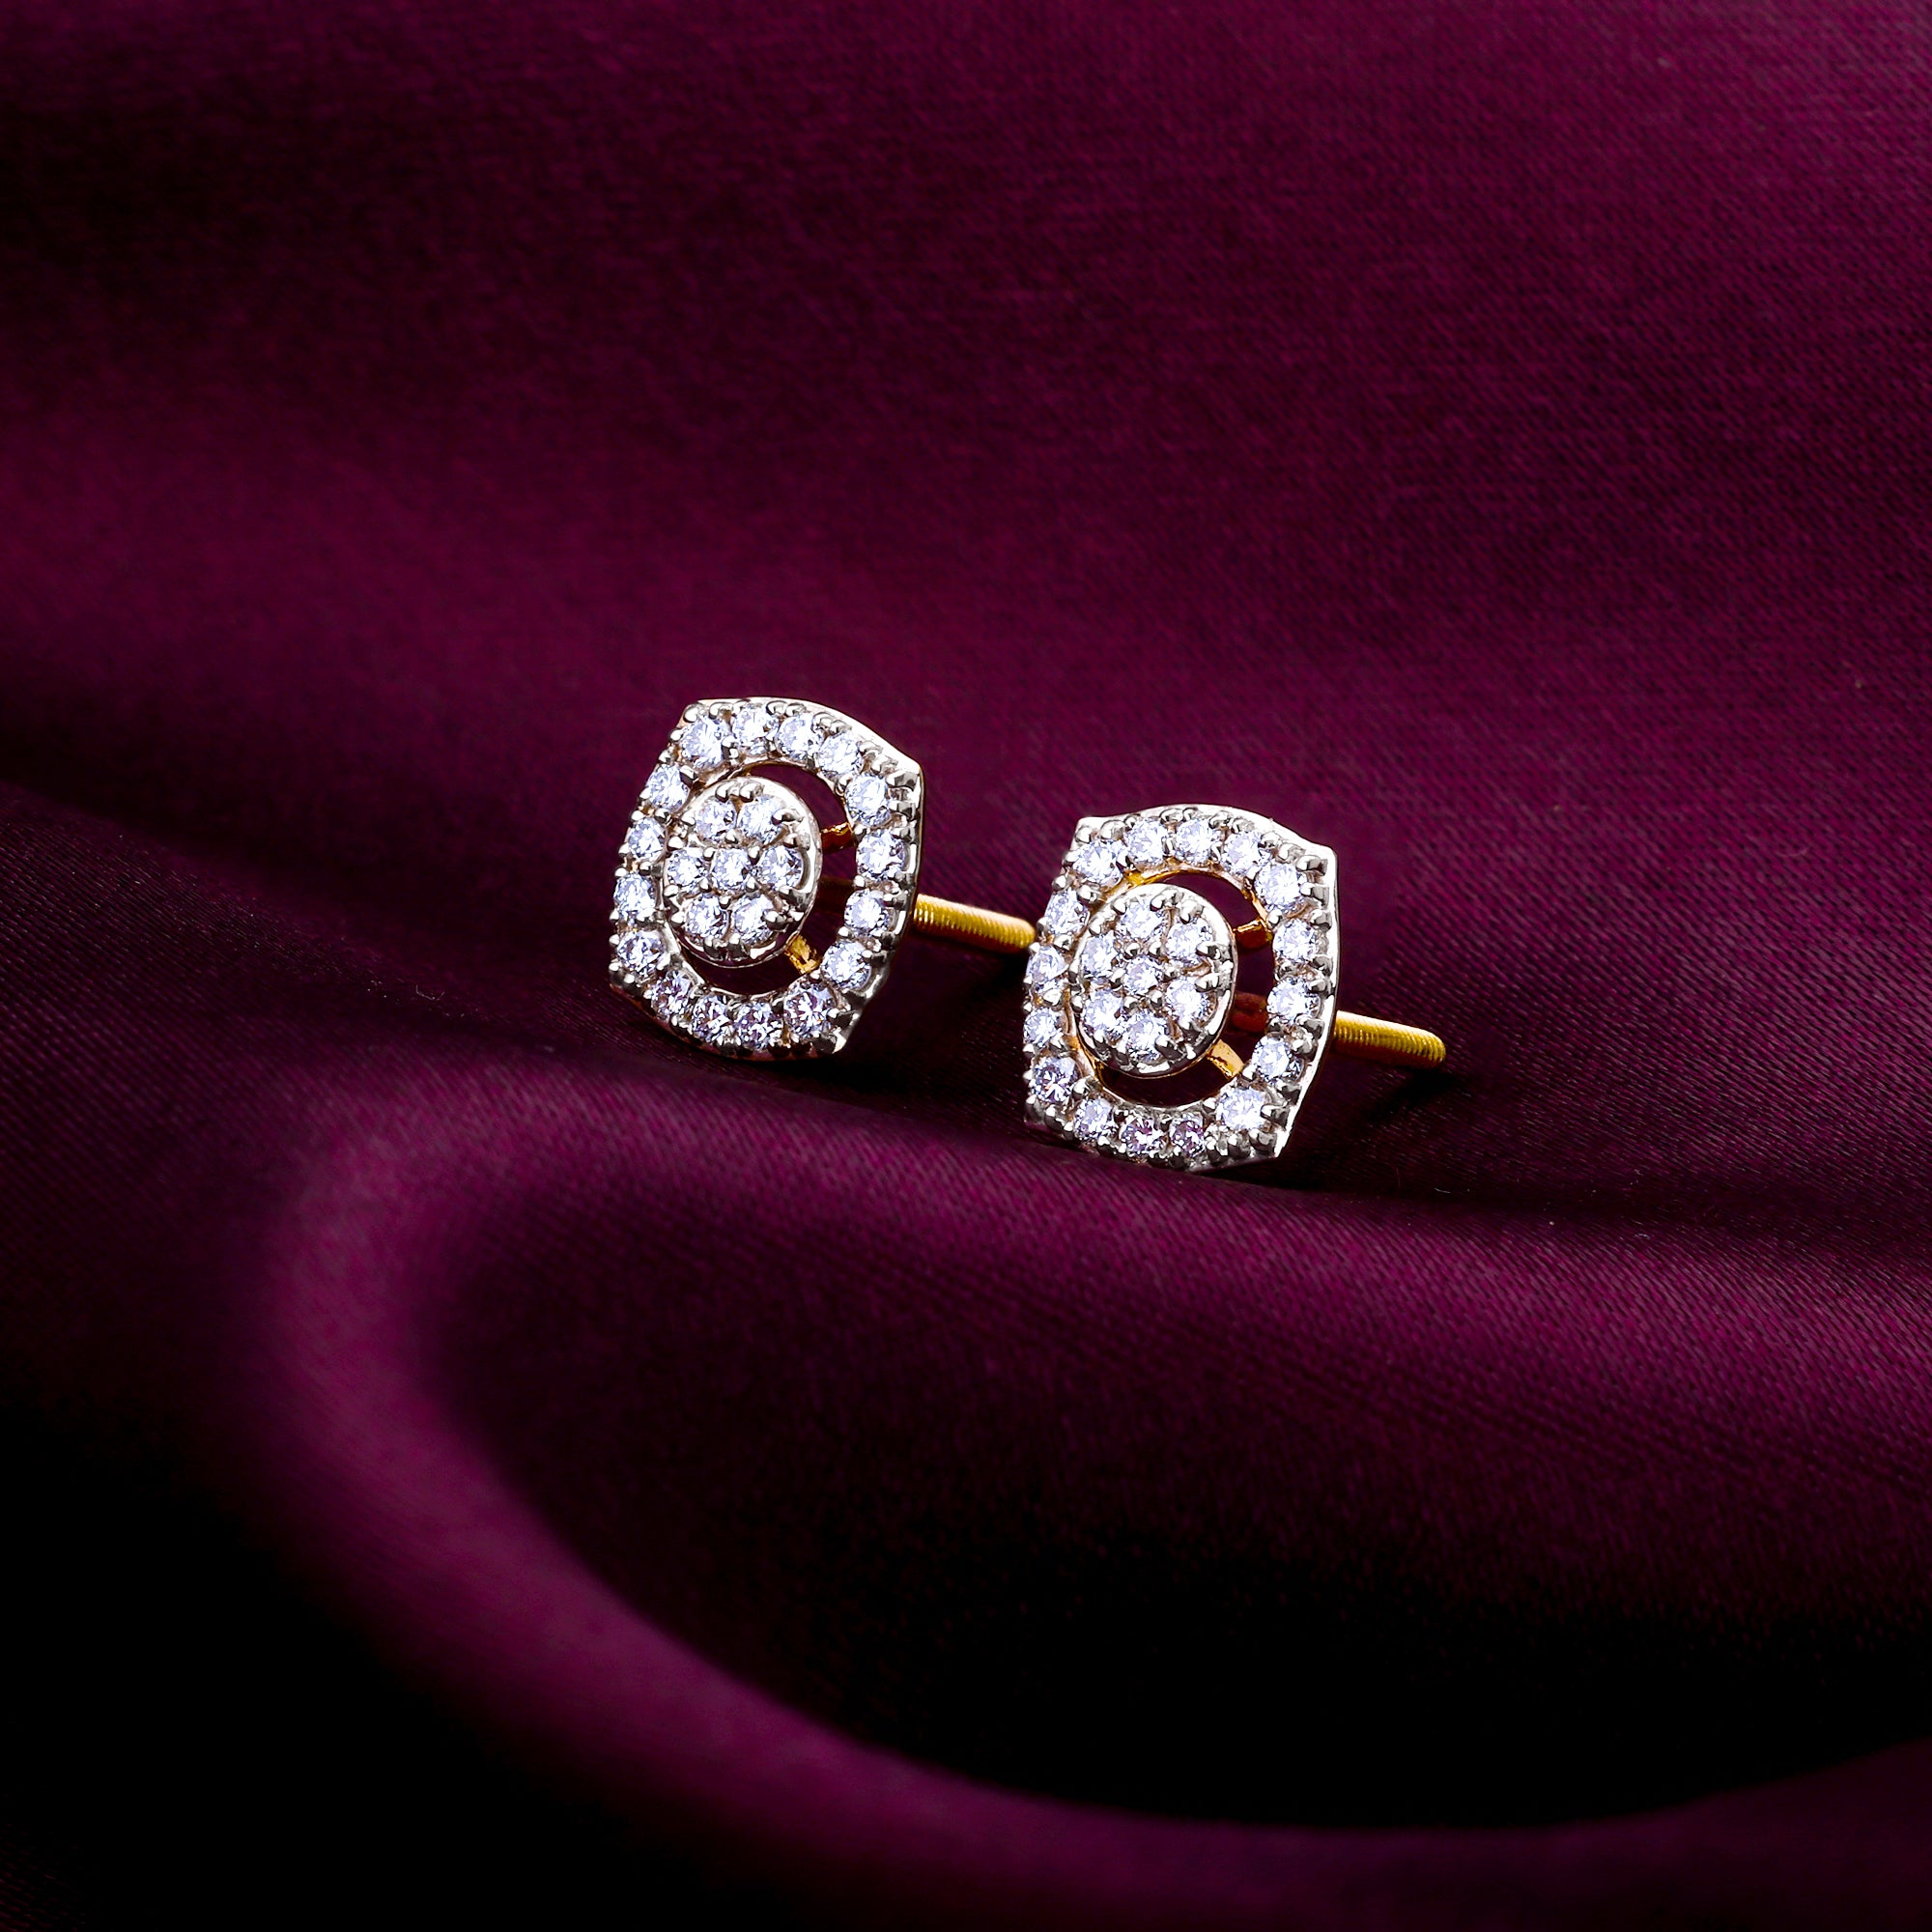 Ananya Jewels-Diamond Jewellery Bangalore – ANANYA JEWELS